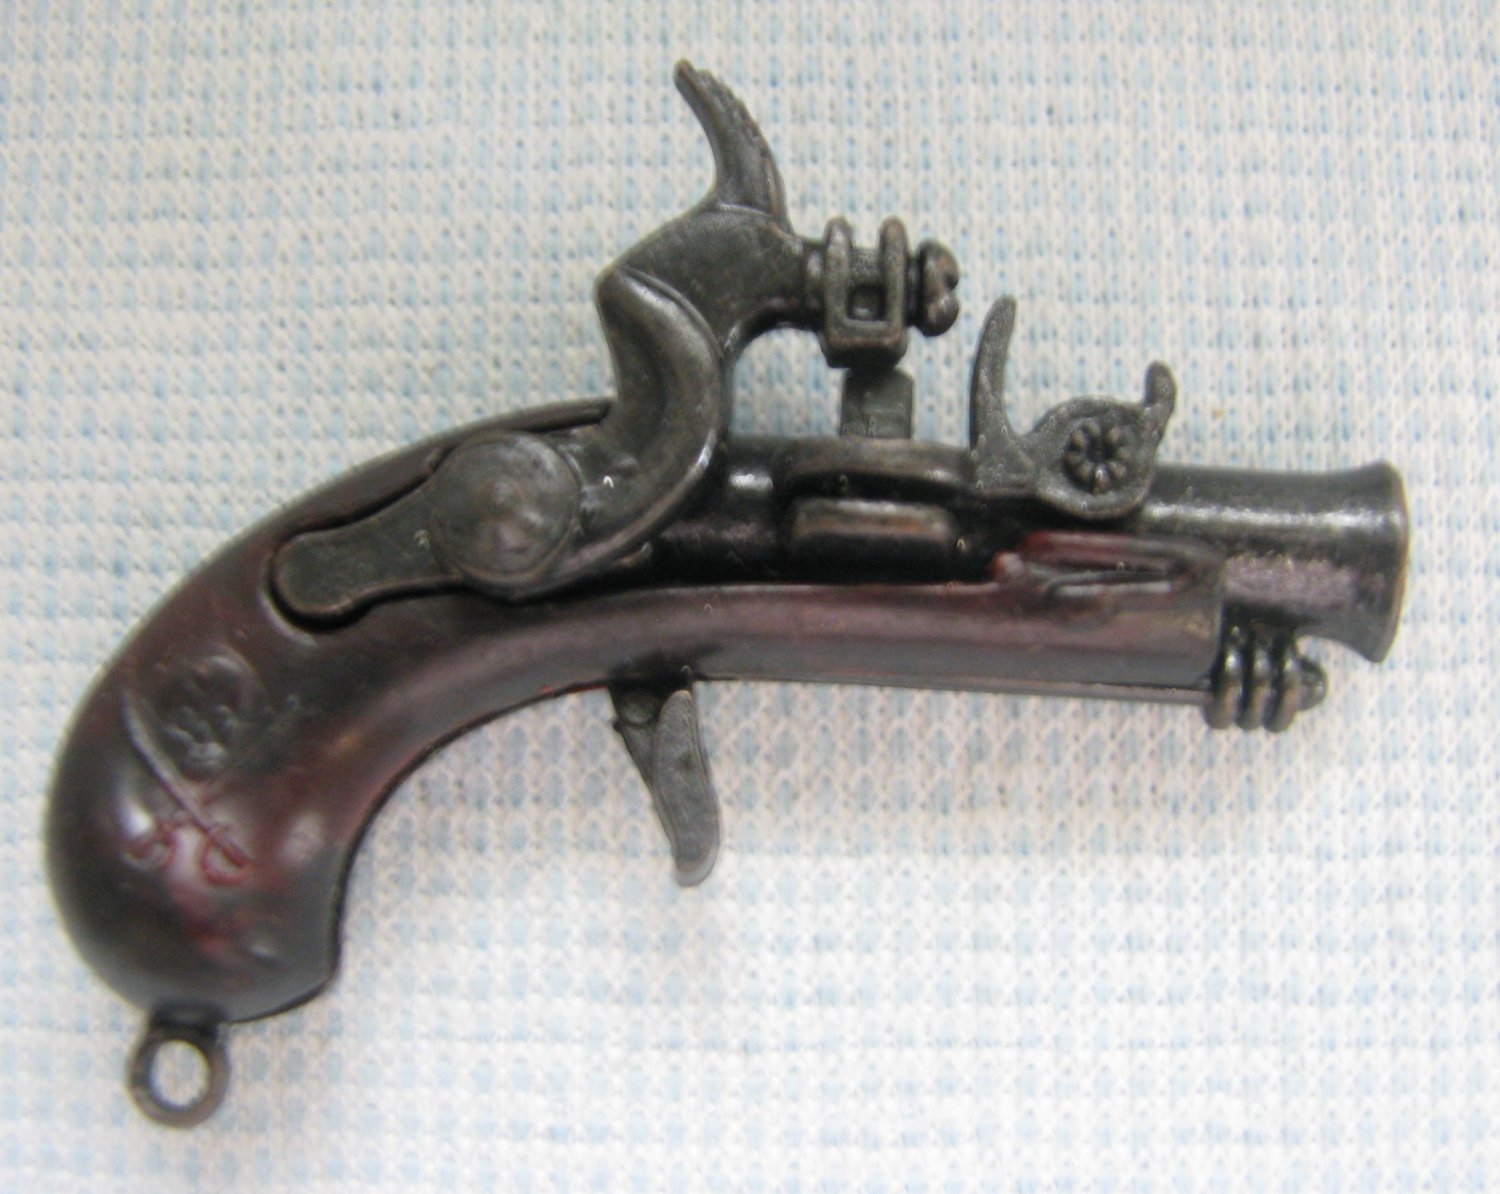 Vintage Pirat Toy 2.25" Metal Pistol